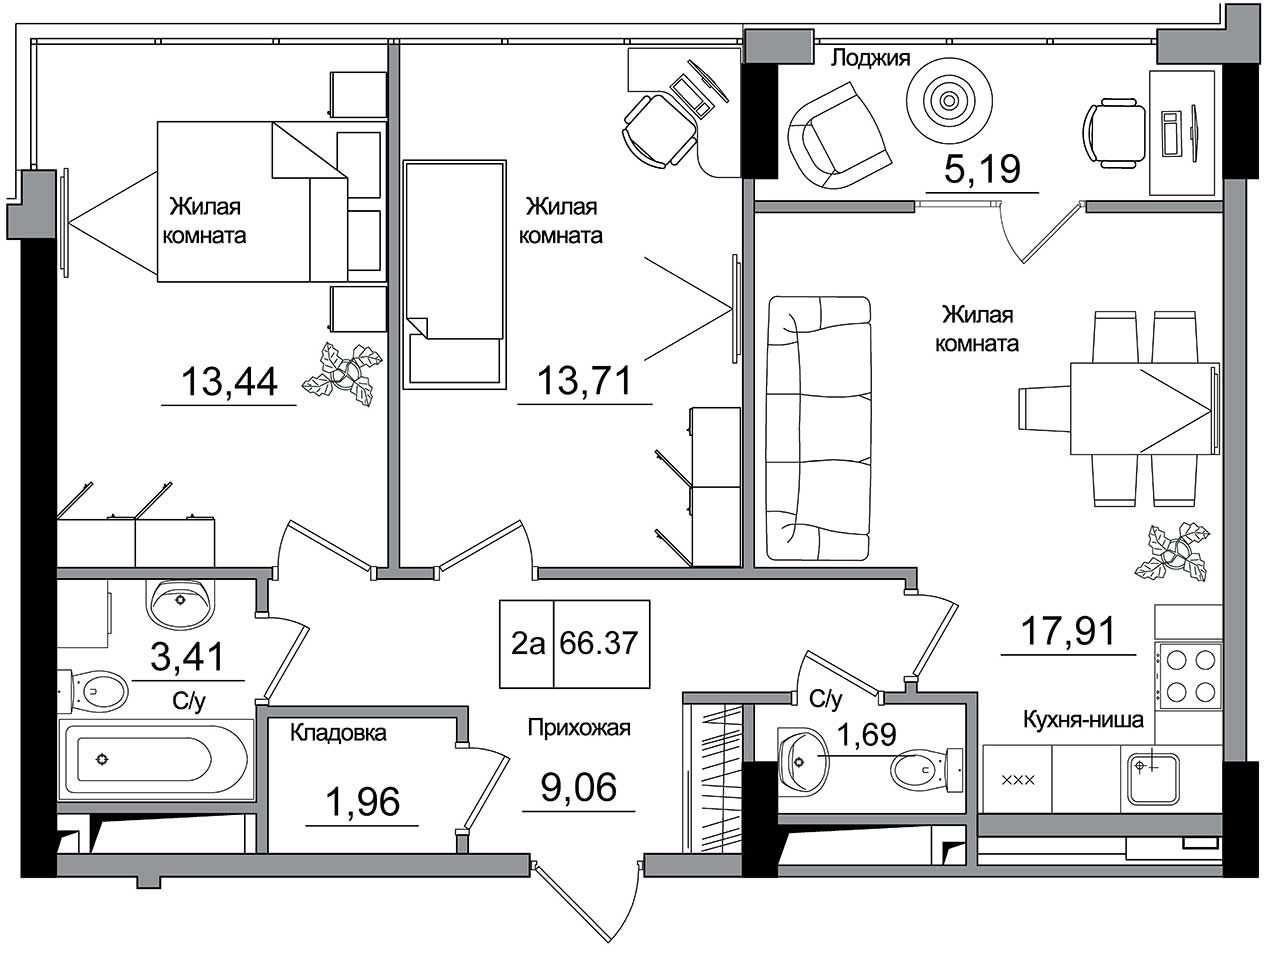 Планировка 2-к квартира площей 66.37м2, AB-16-09/00006.